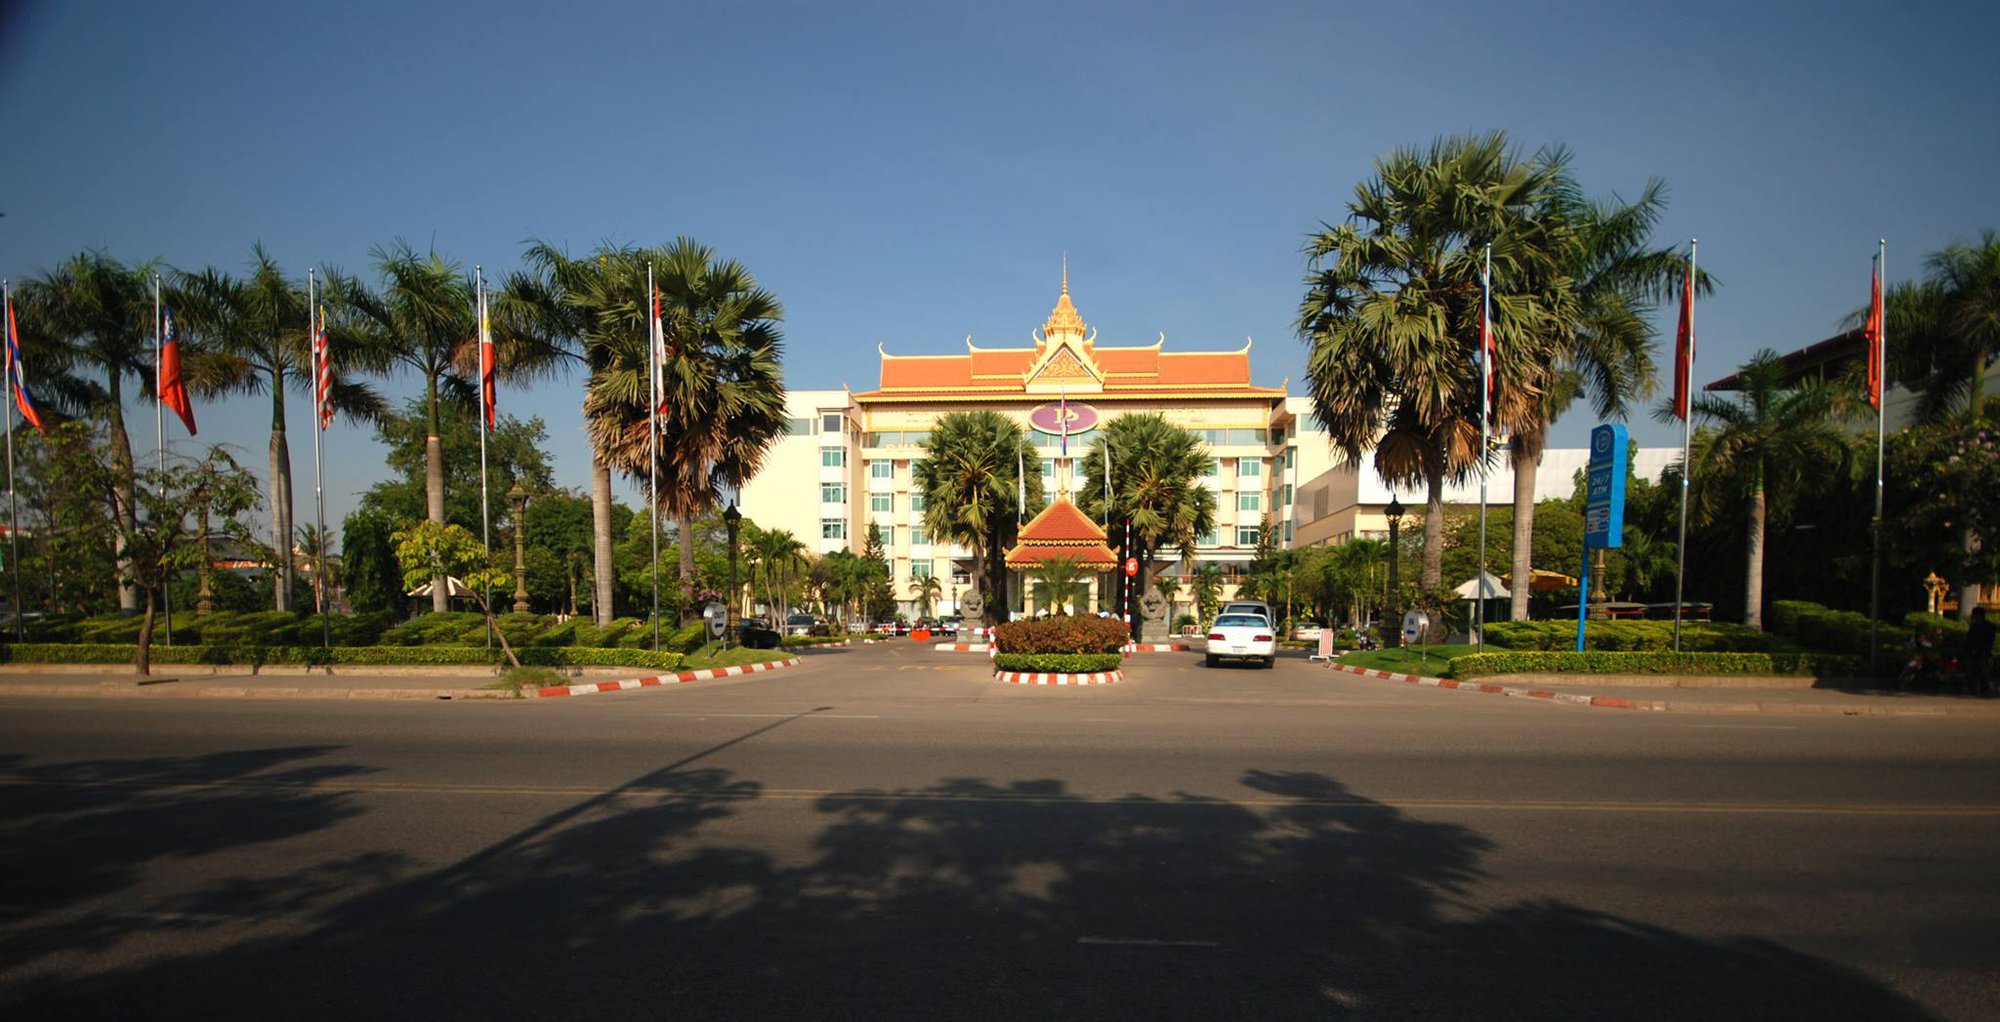 Cận cảnh khách sạn 4 sao nơi U22 Việt Nam đóng quân tại Phnom Penh - Ảnh 1.